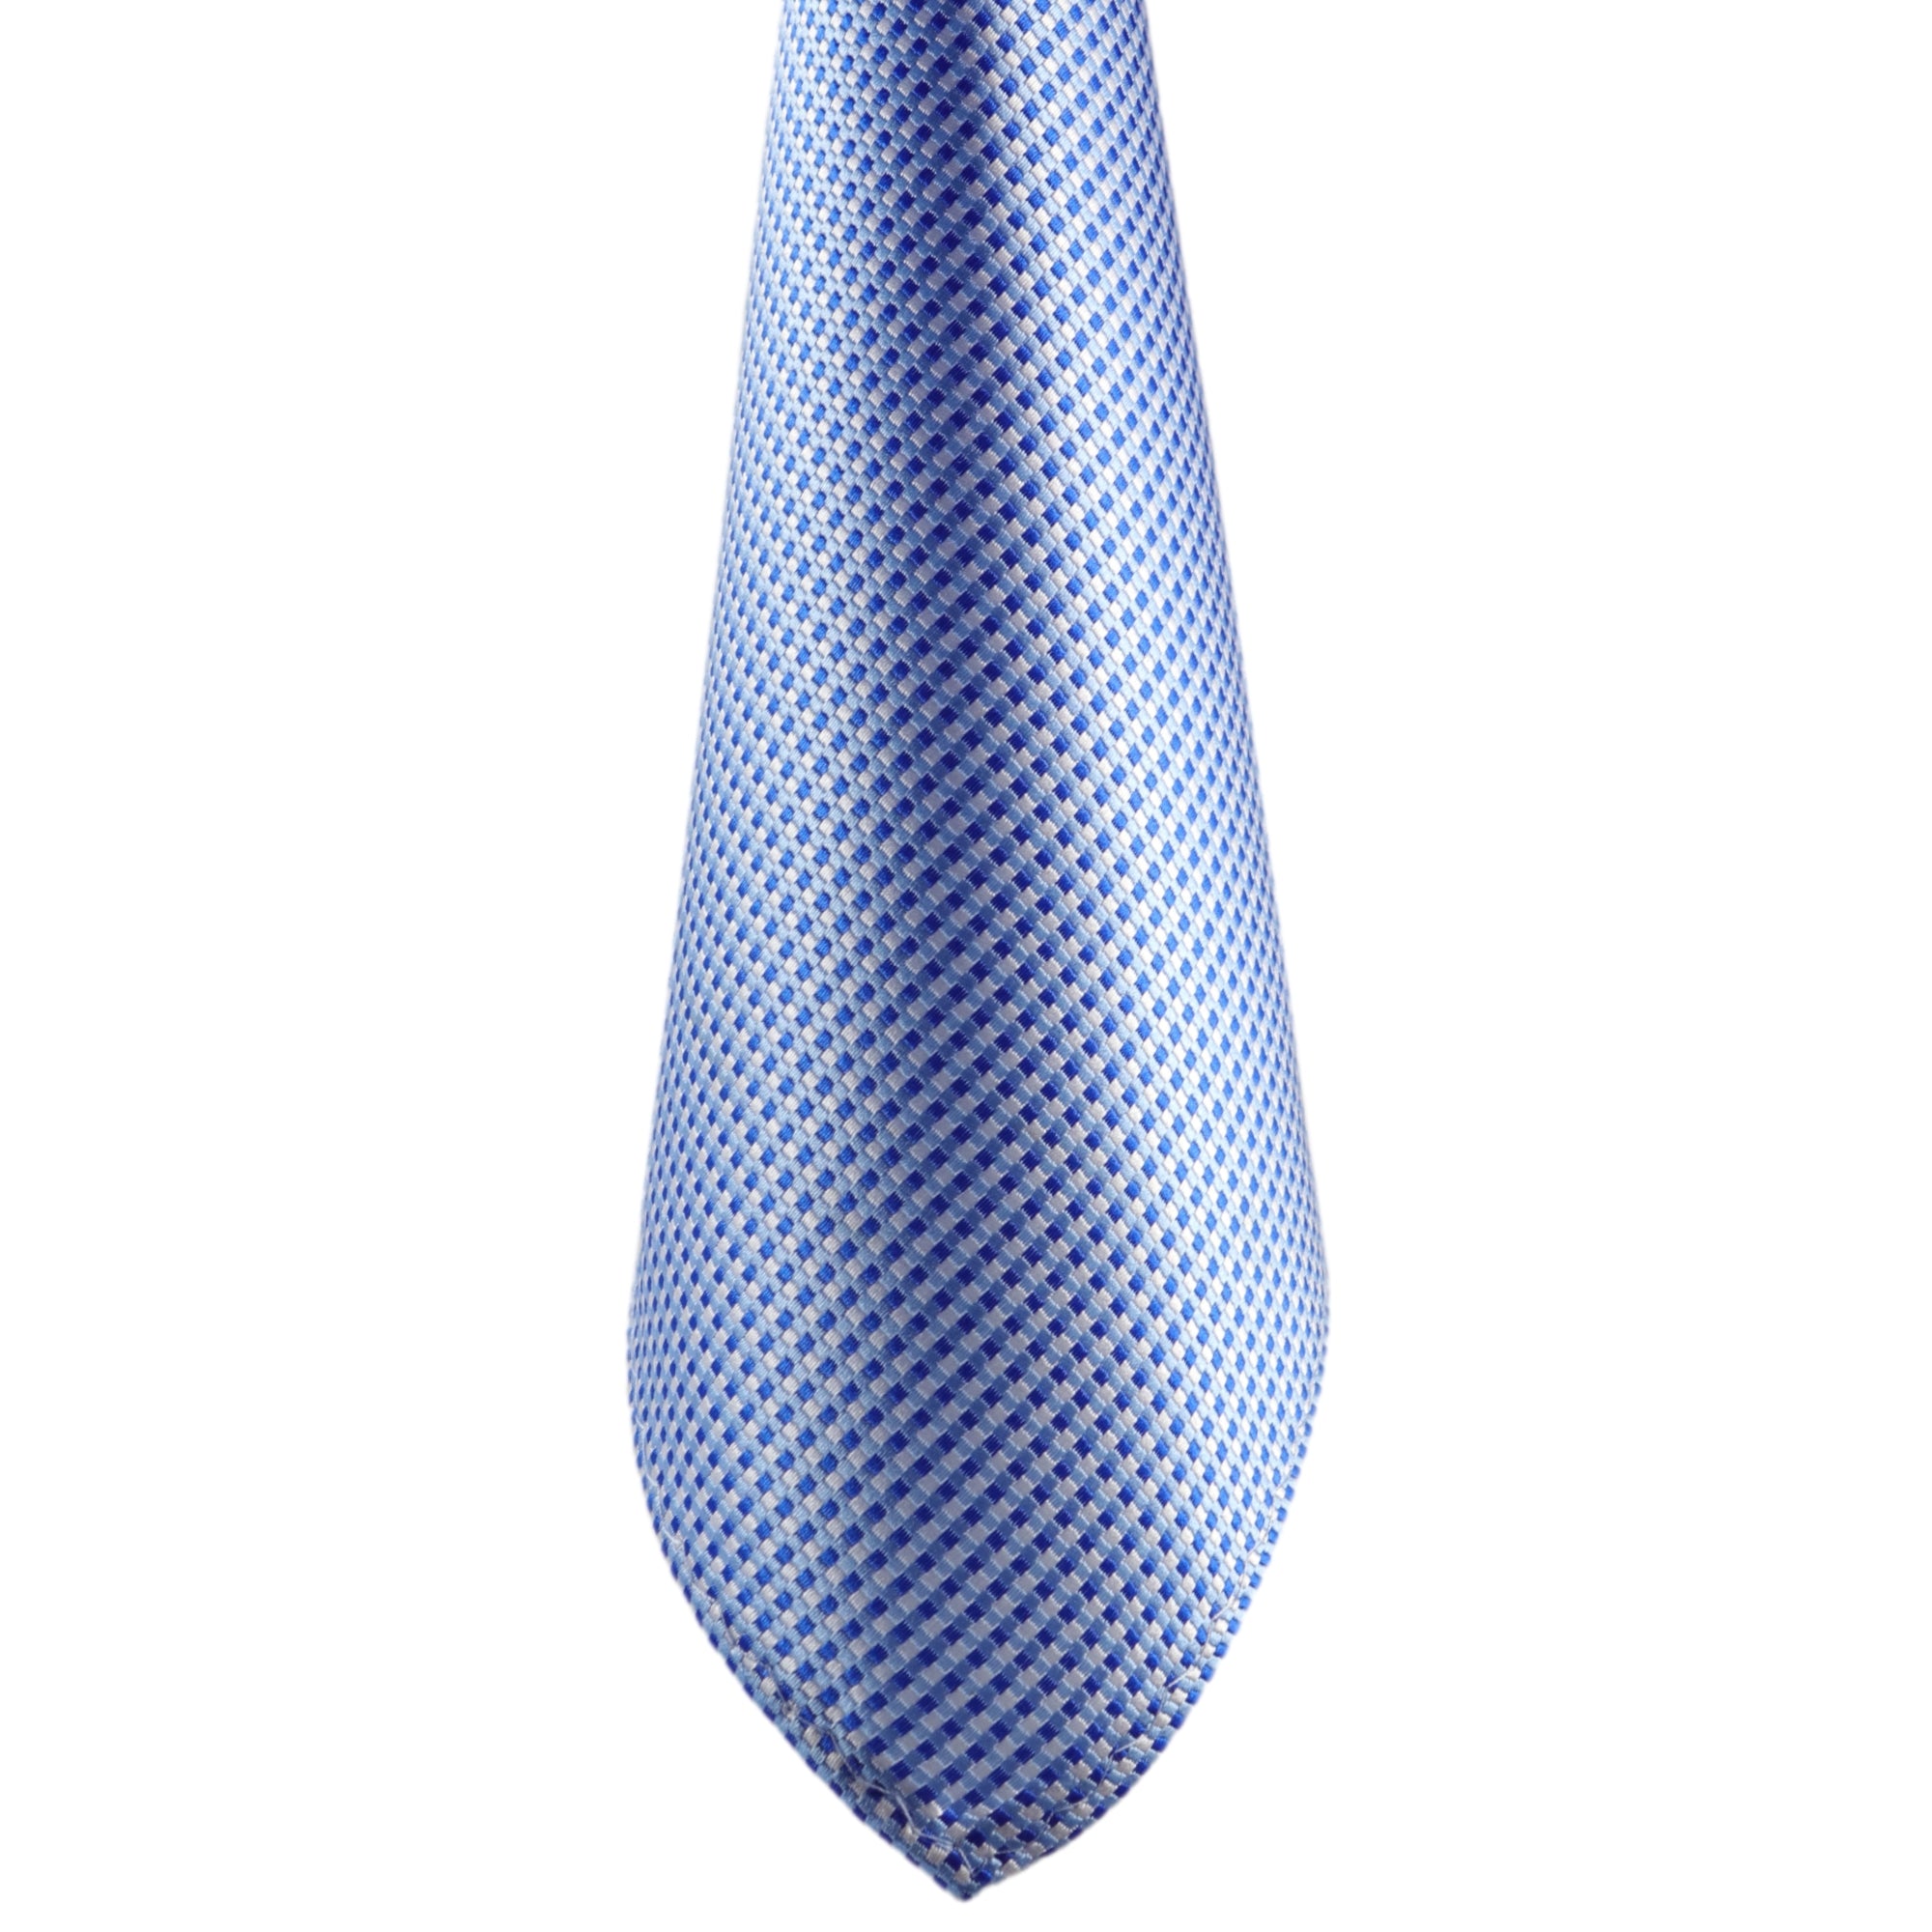 Herren-Fliege! GASSANIshop GASSANI Krawatten Kaufen im Karierte - Blau-Weiss Sie